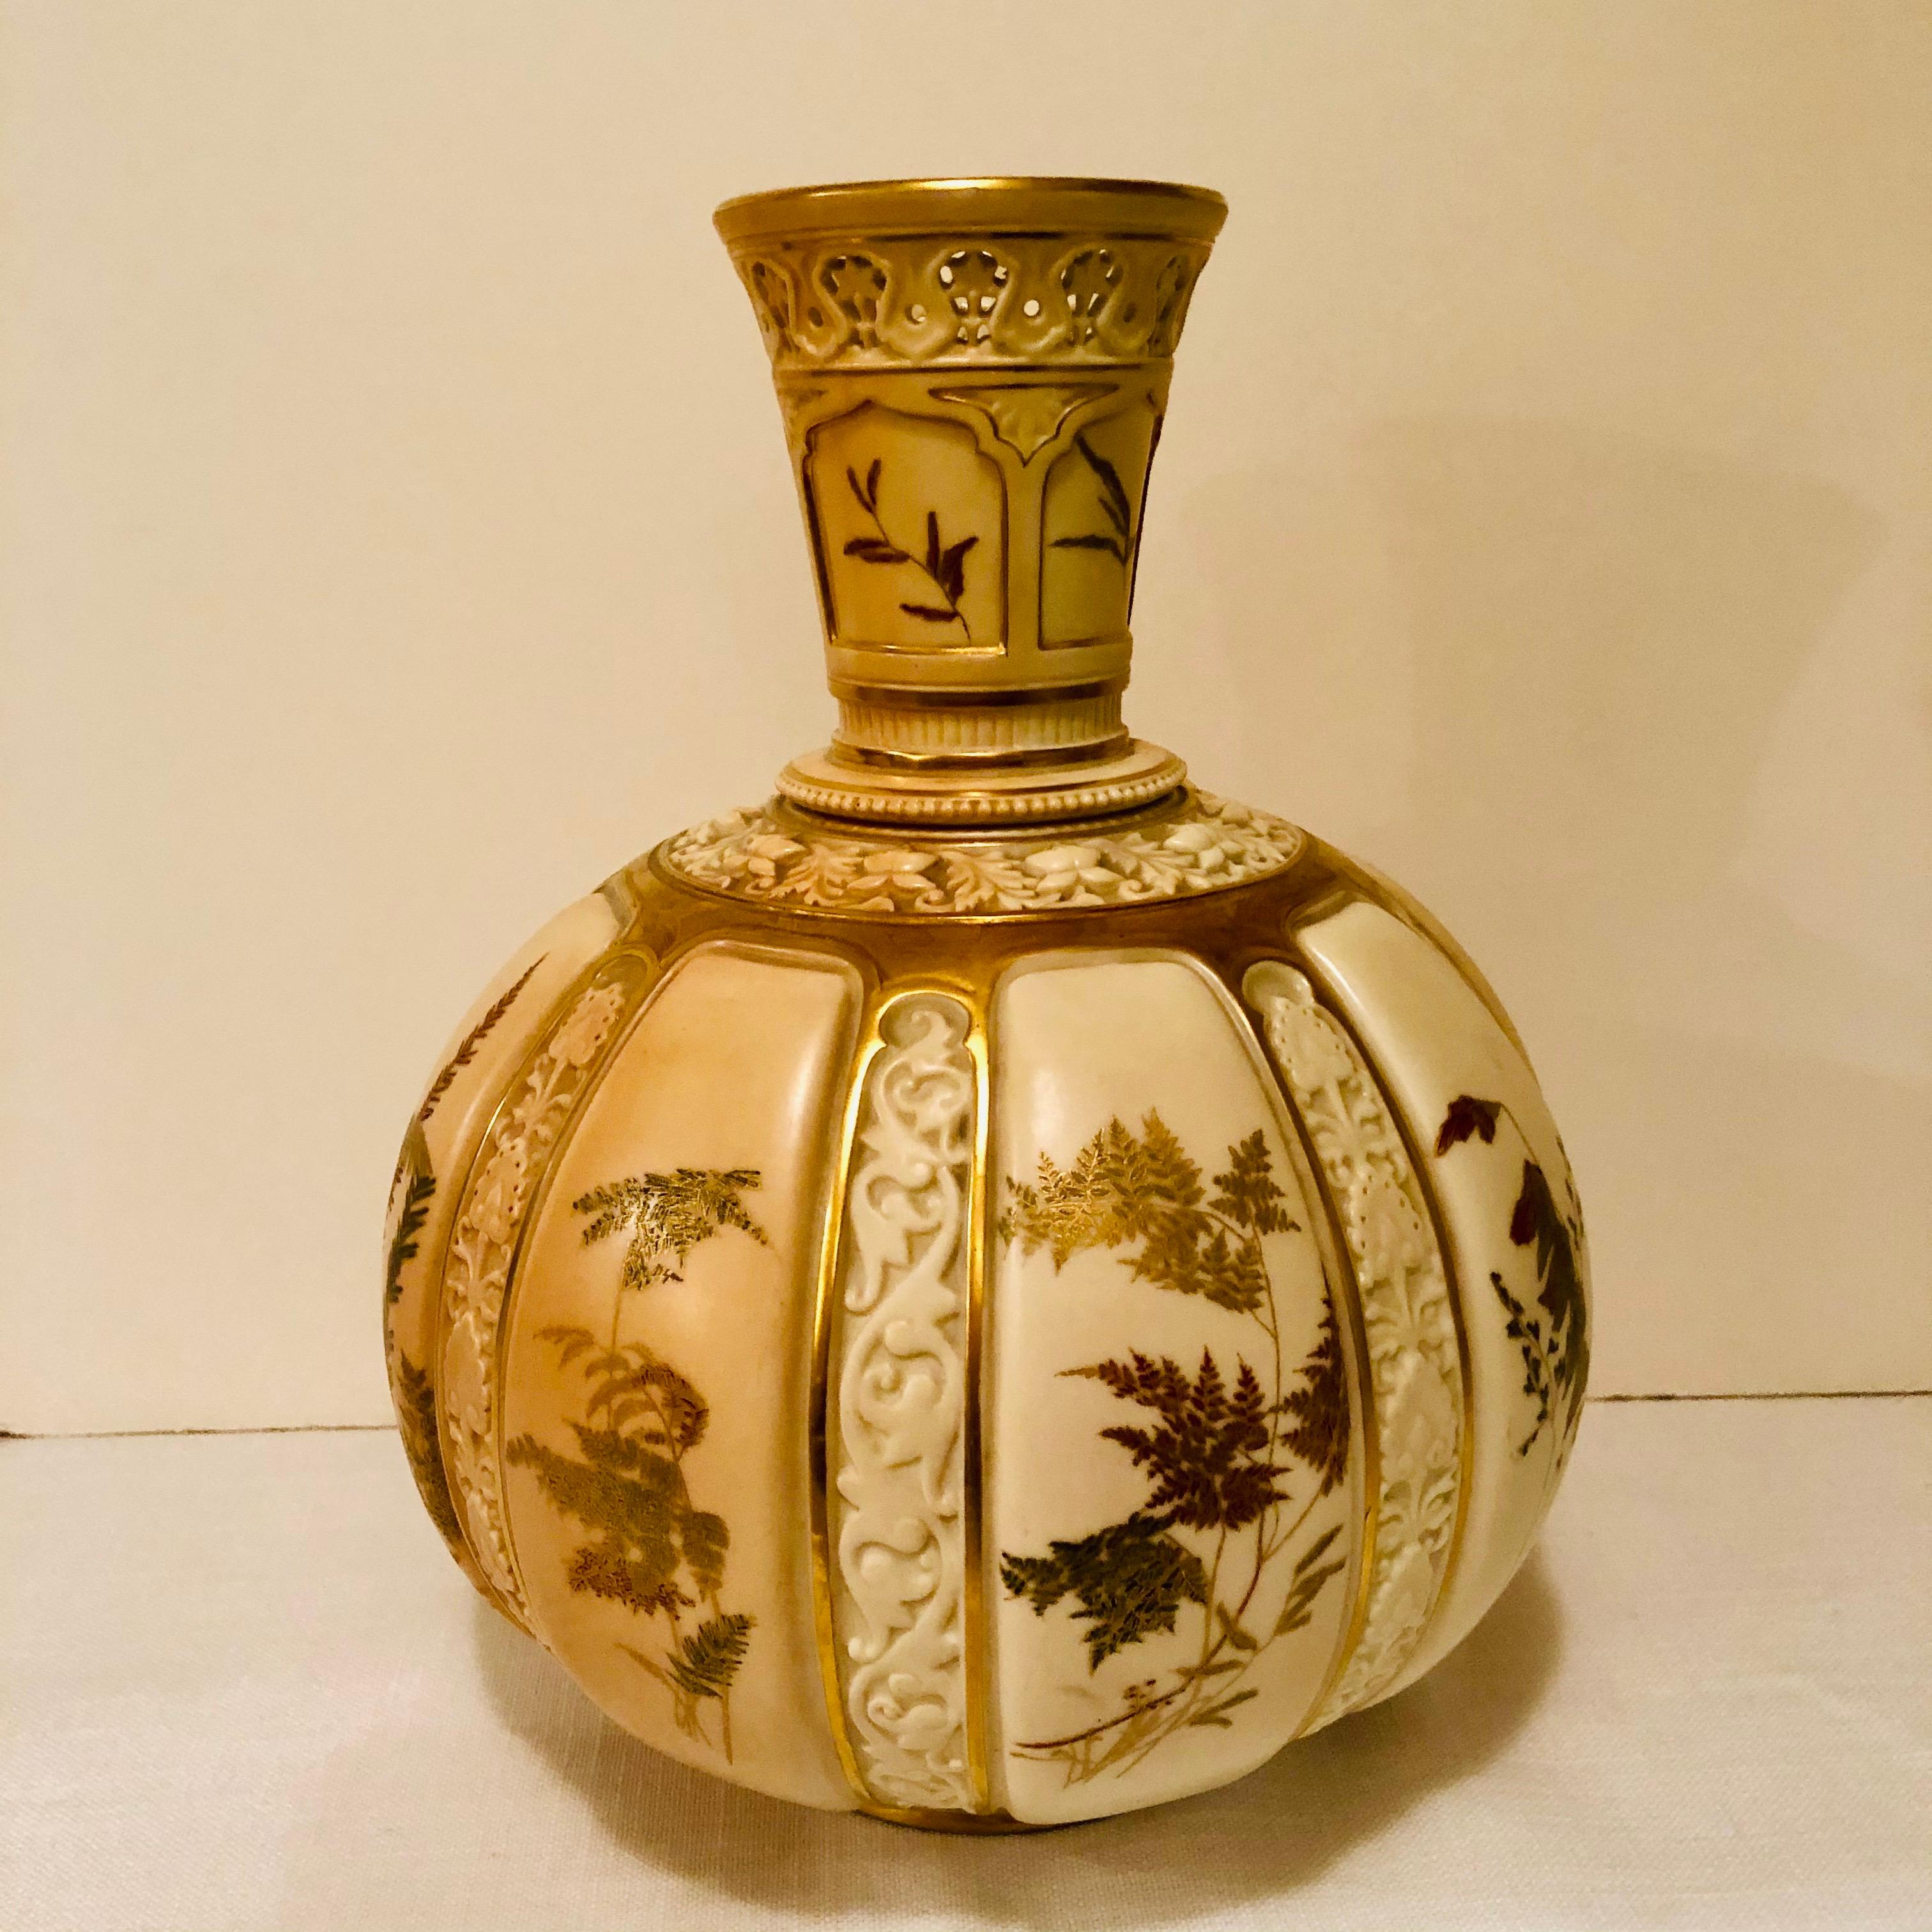 Il s'agit d'un superbe grand vase Royal Worcester peint à la main avec de belles fougères et autres plantes. Chacune des peintures de la flore est entrecoupée d'un décor en relief en porcelaine ivoire roux. La partie supérieure de ce vase est